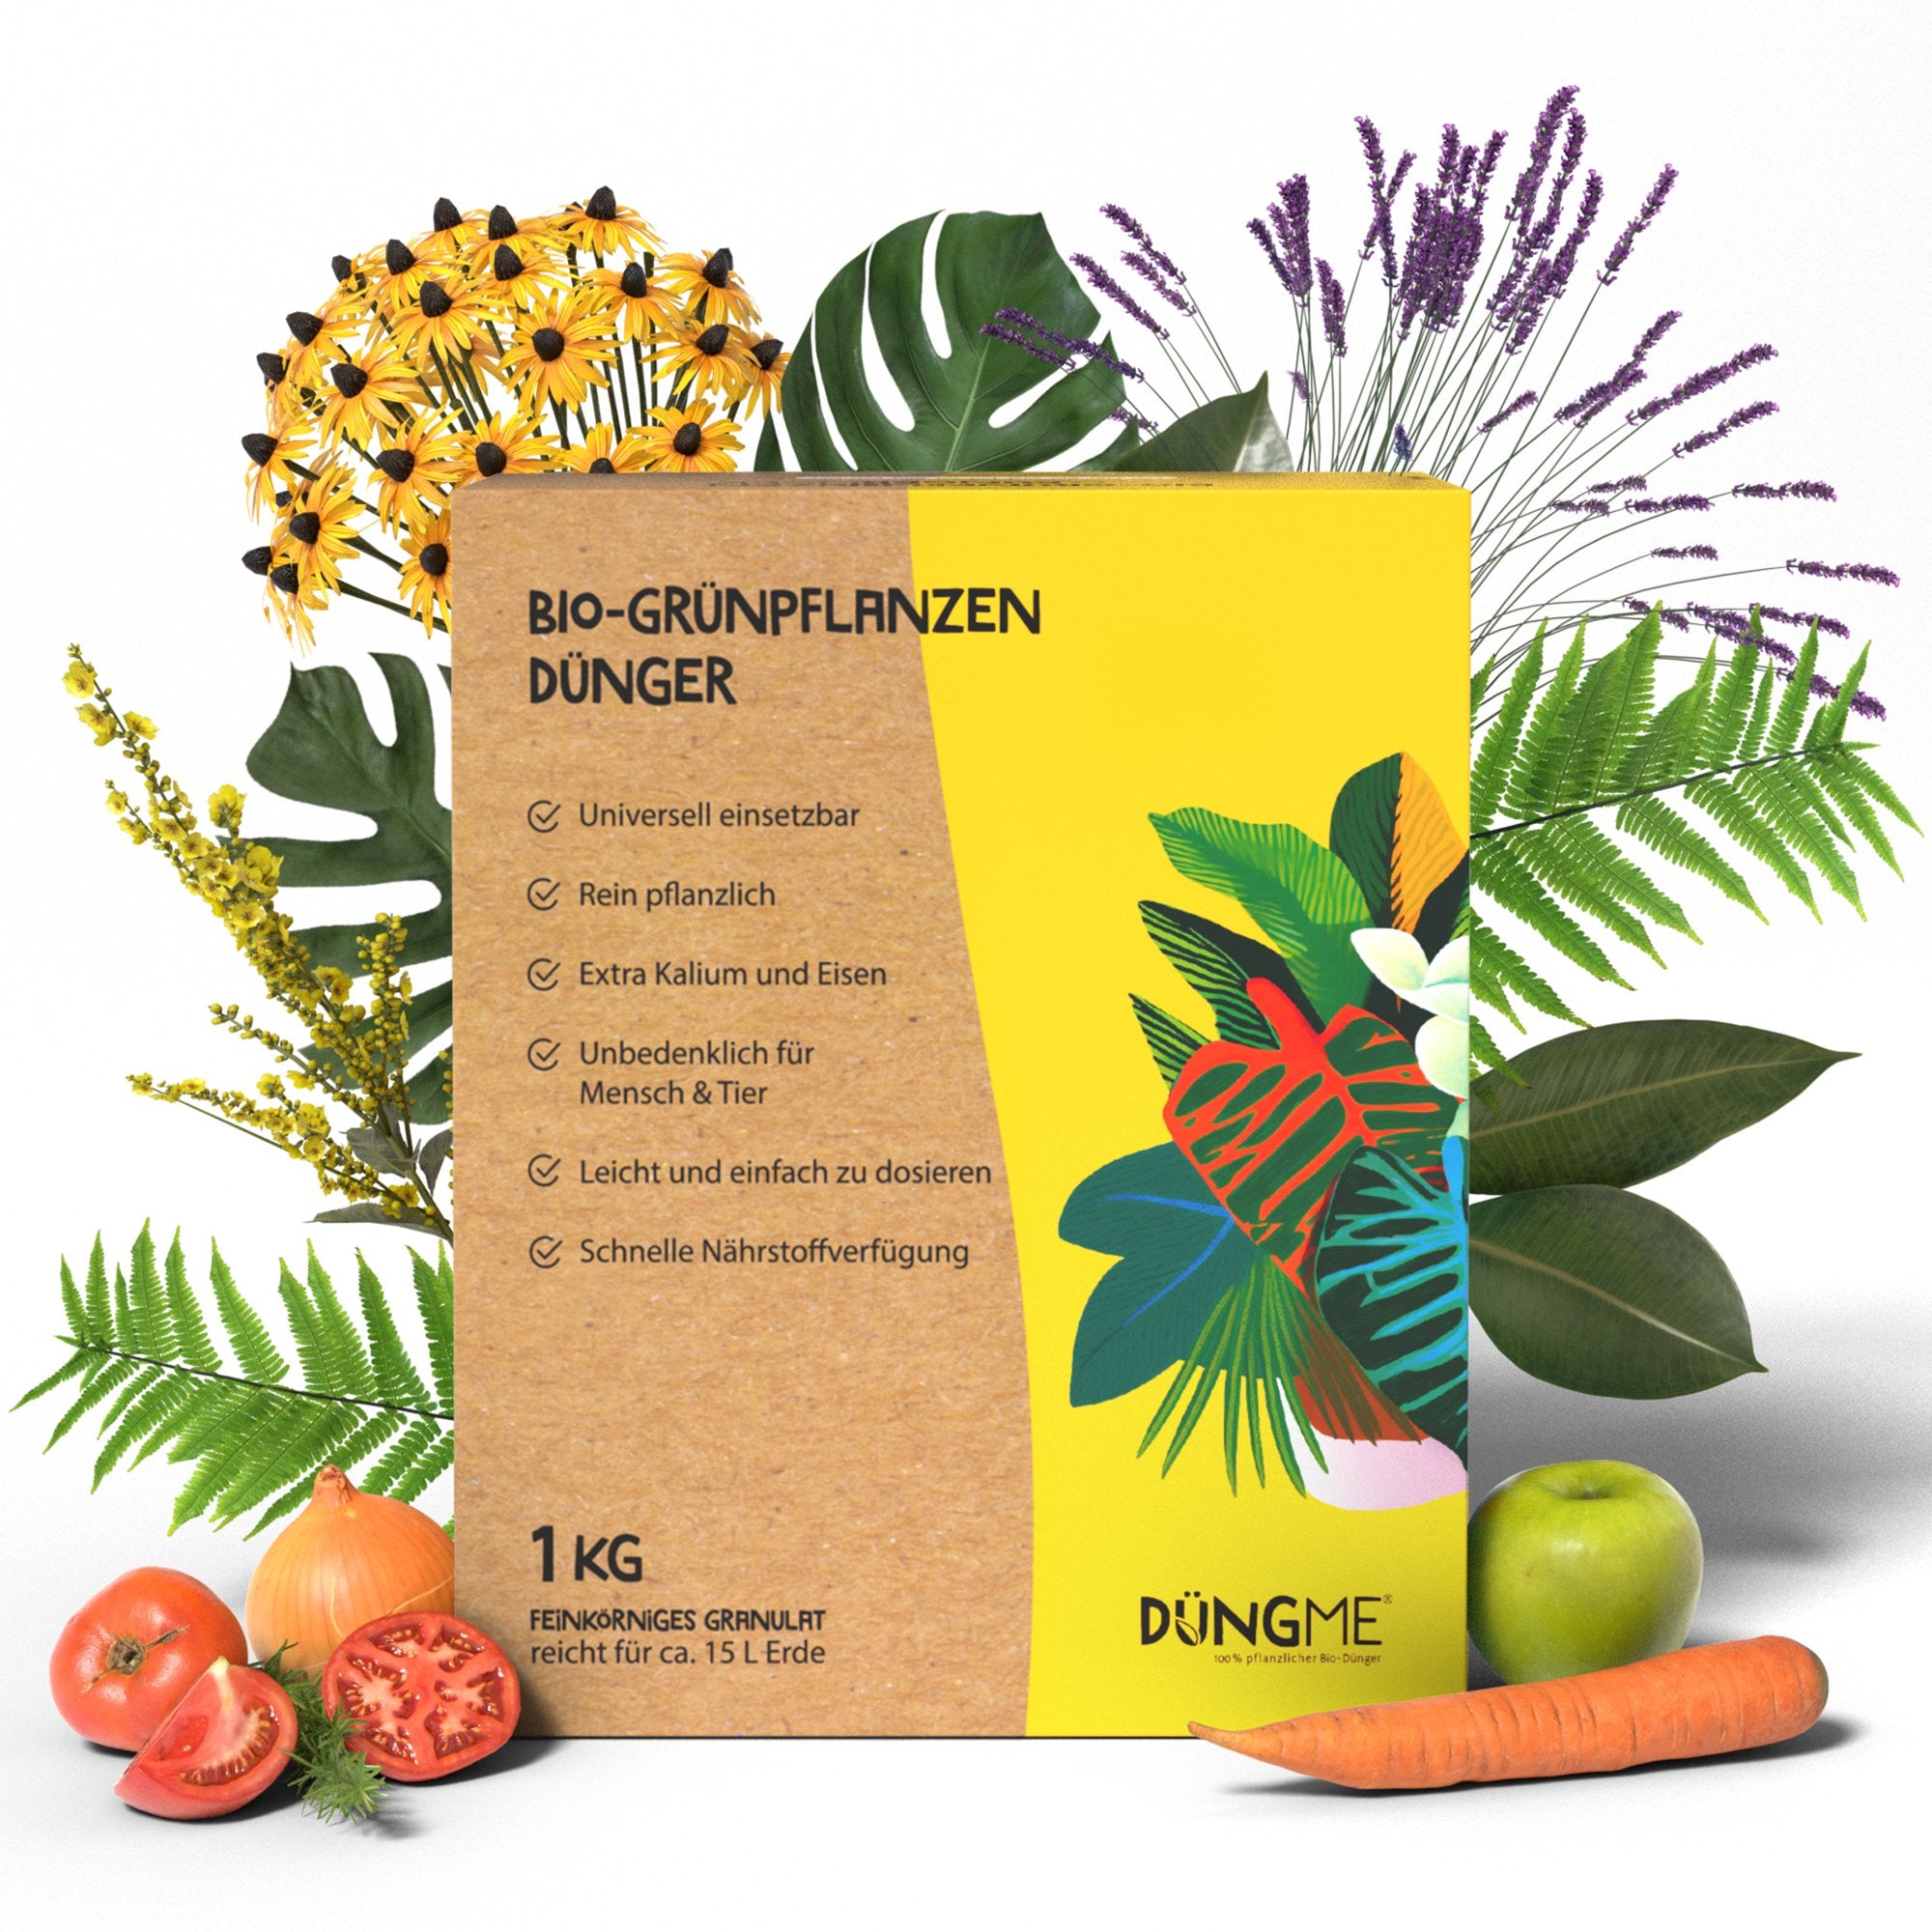 Bio-Grünpflanzendünger - 1 kg